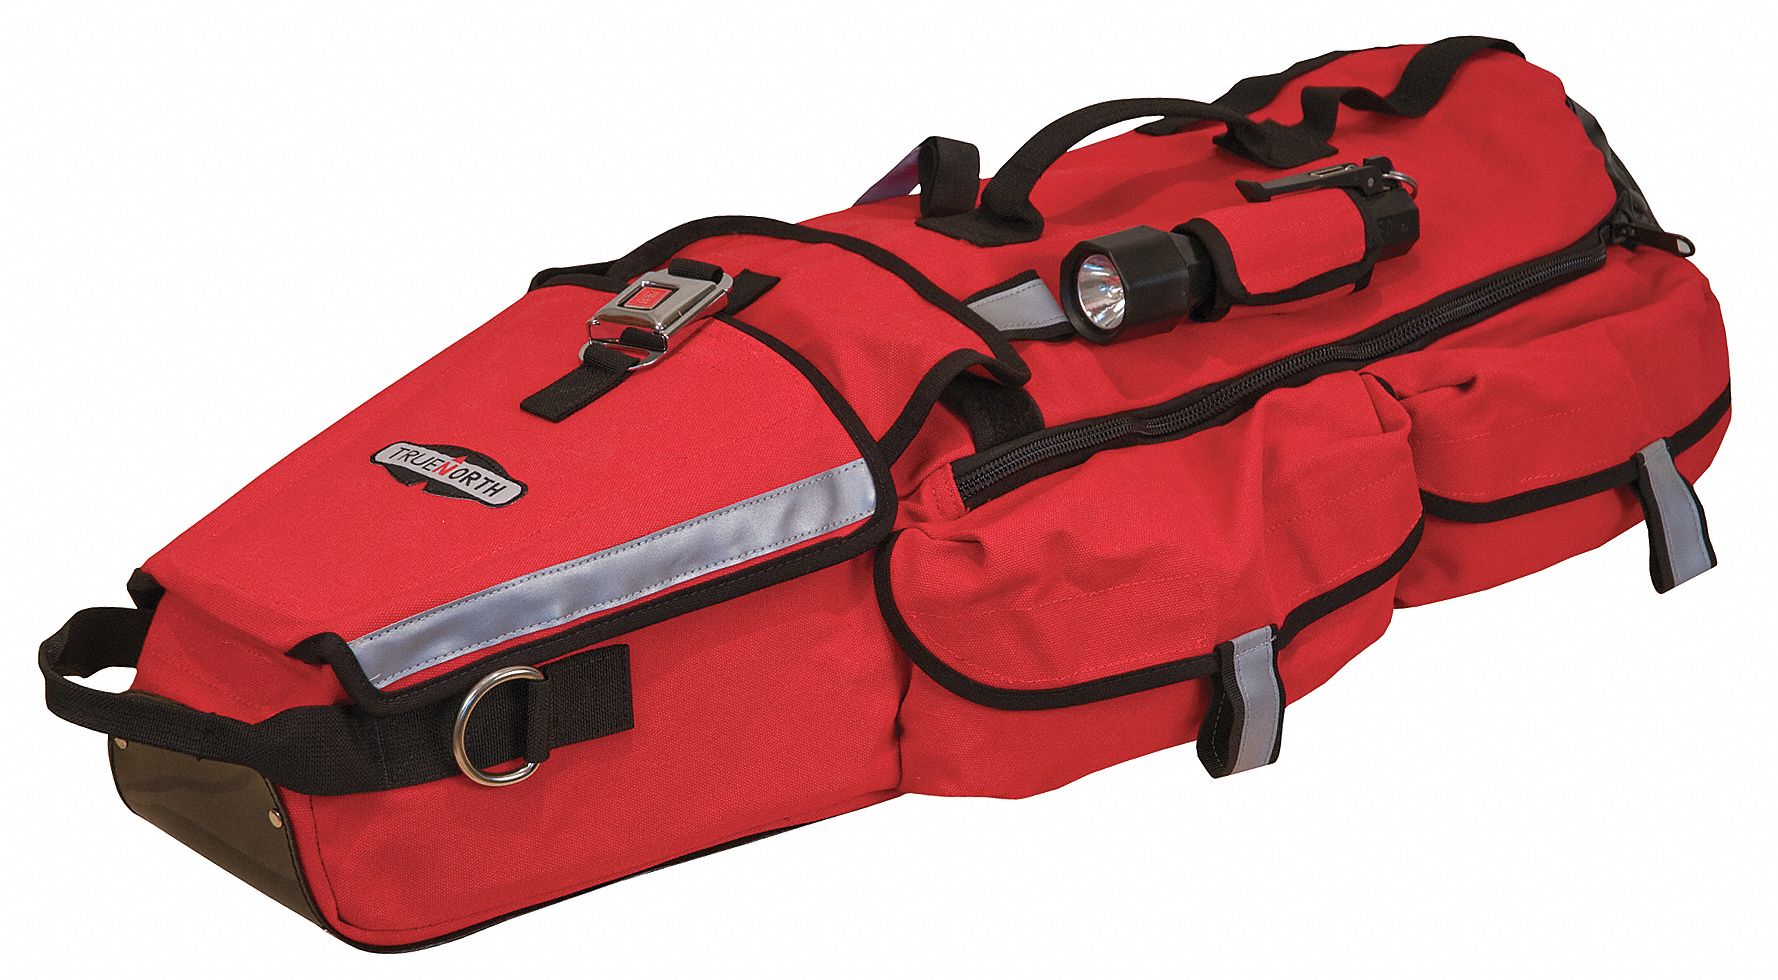 Gear Bag: Gear Bag, Hi-Viz Red, 13 in Wd, 10 in Dp, 36 in Ht, 2 Pockets, Nylon